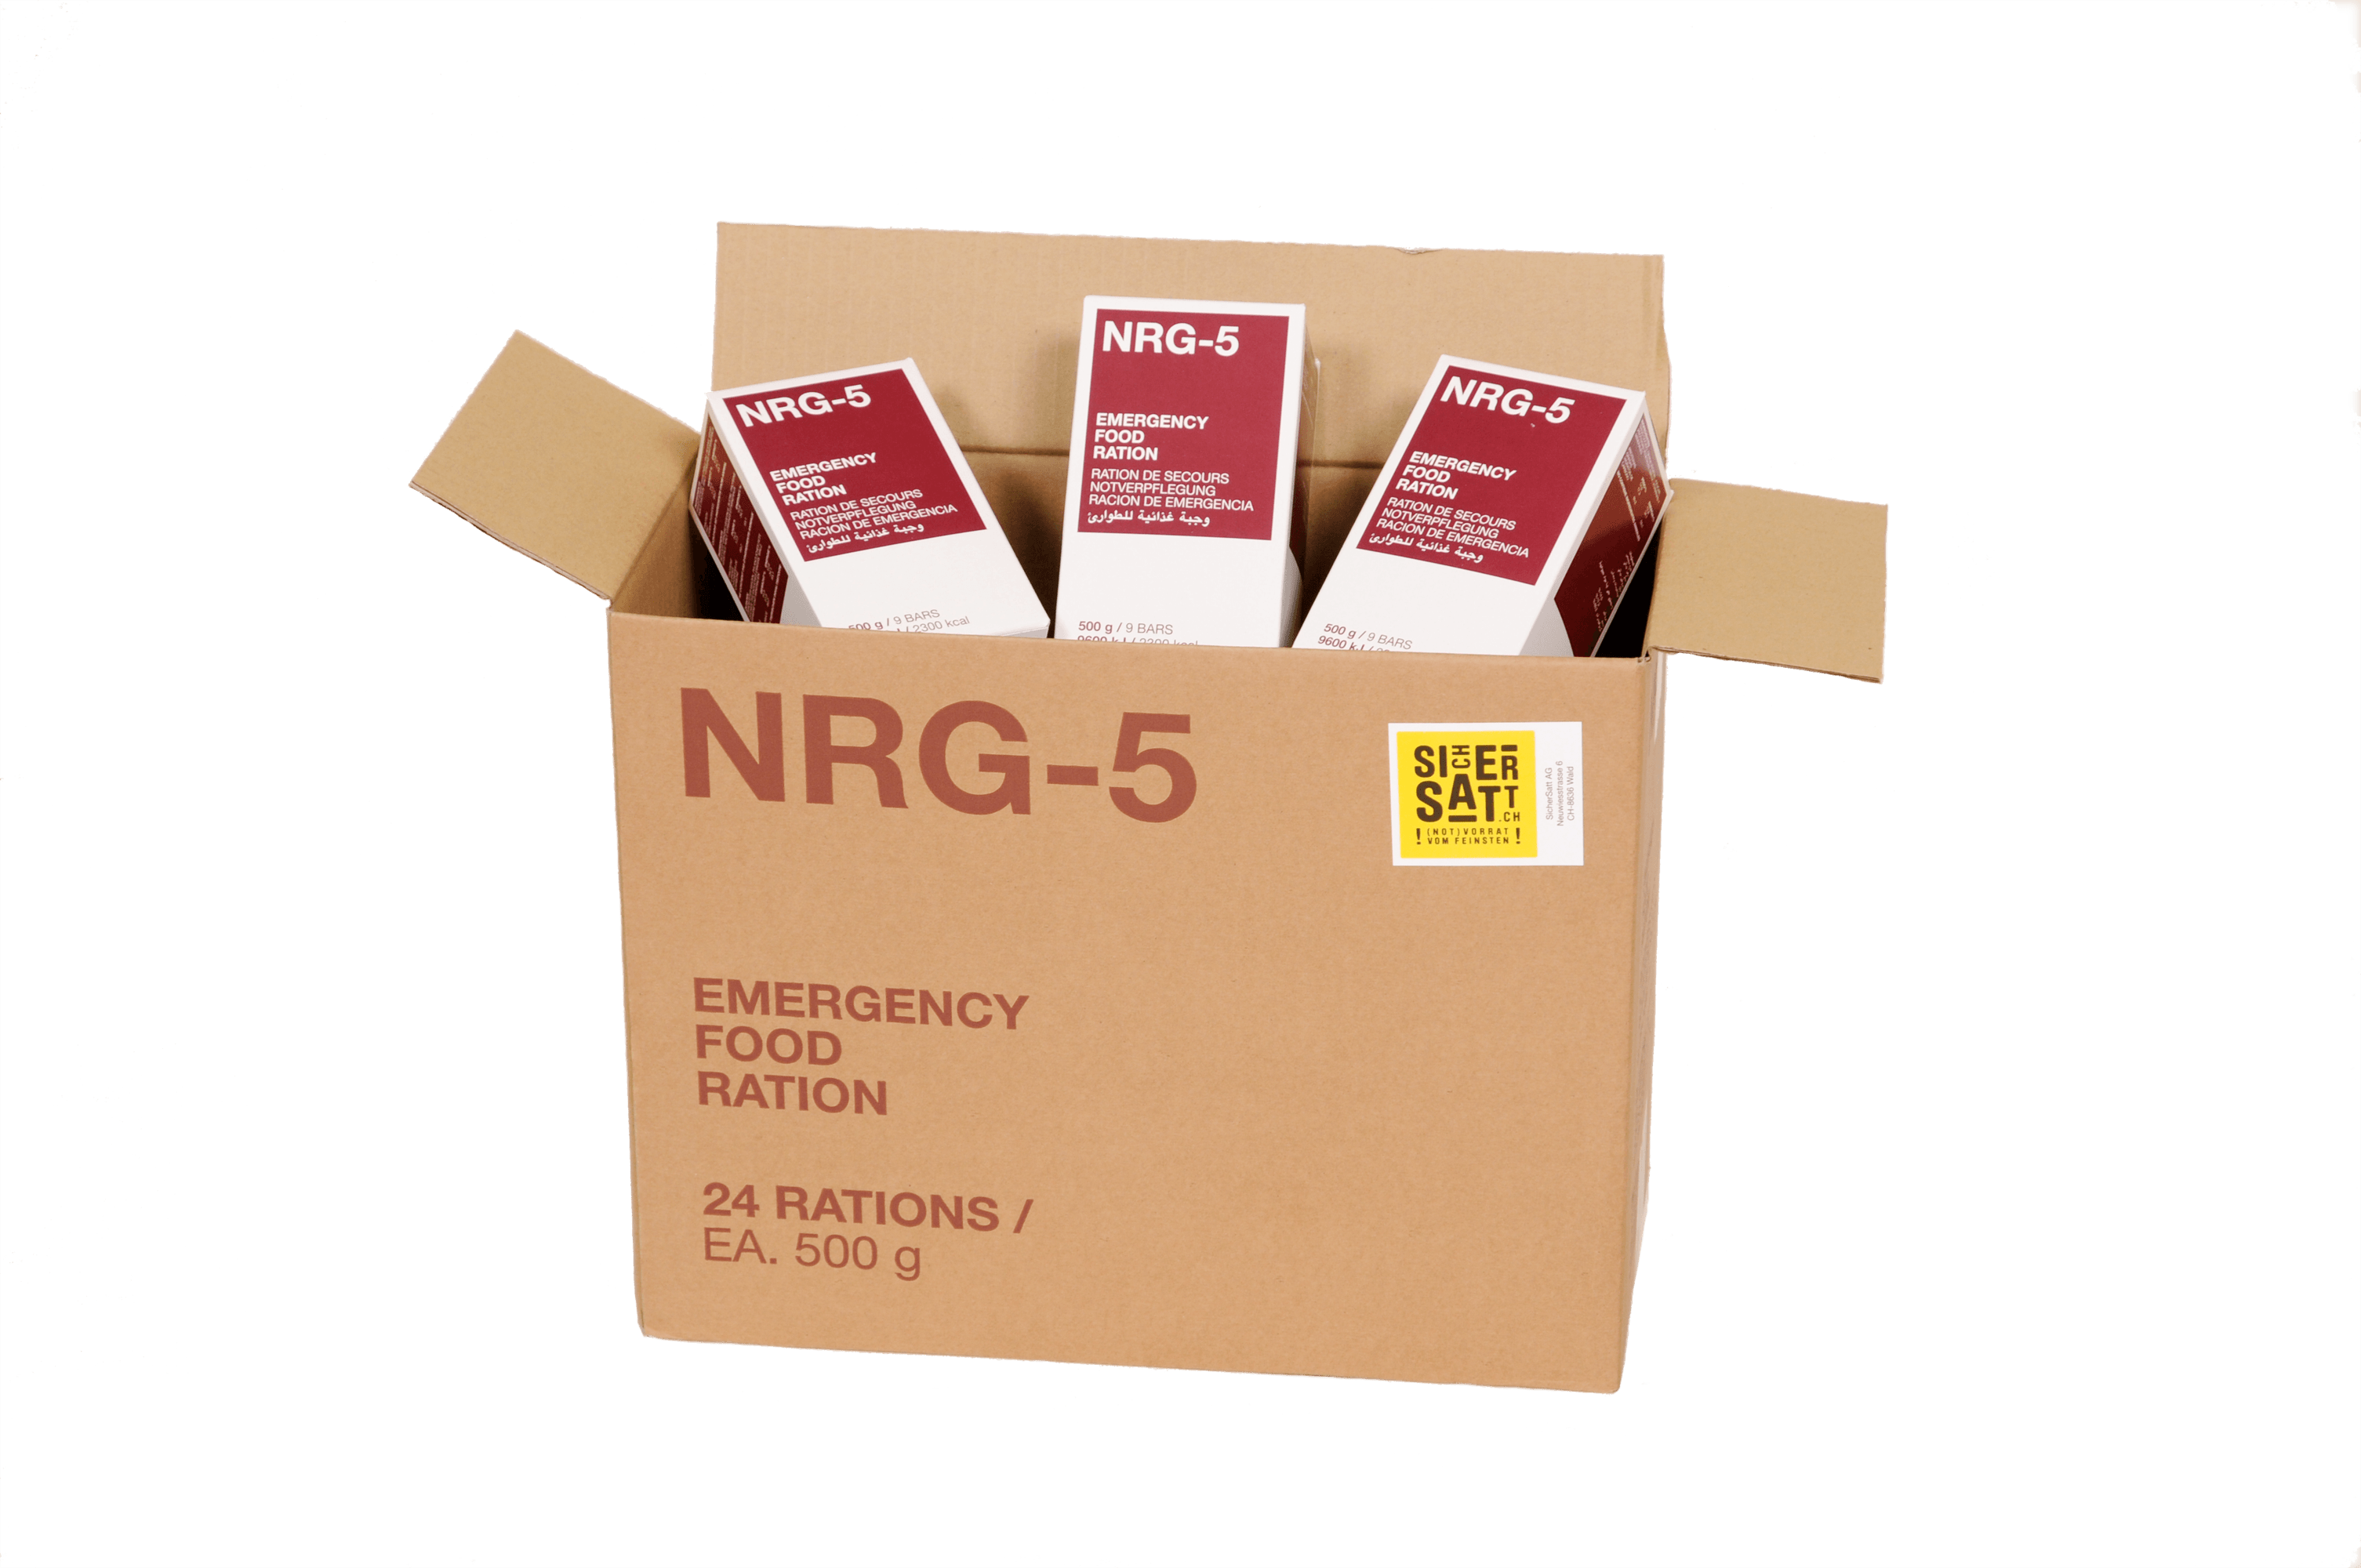 NRG-5 500 g 2300 kcal food rations